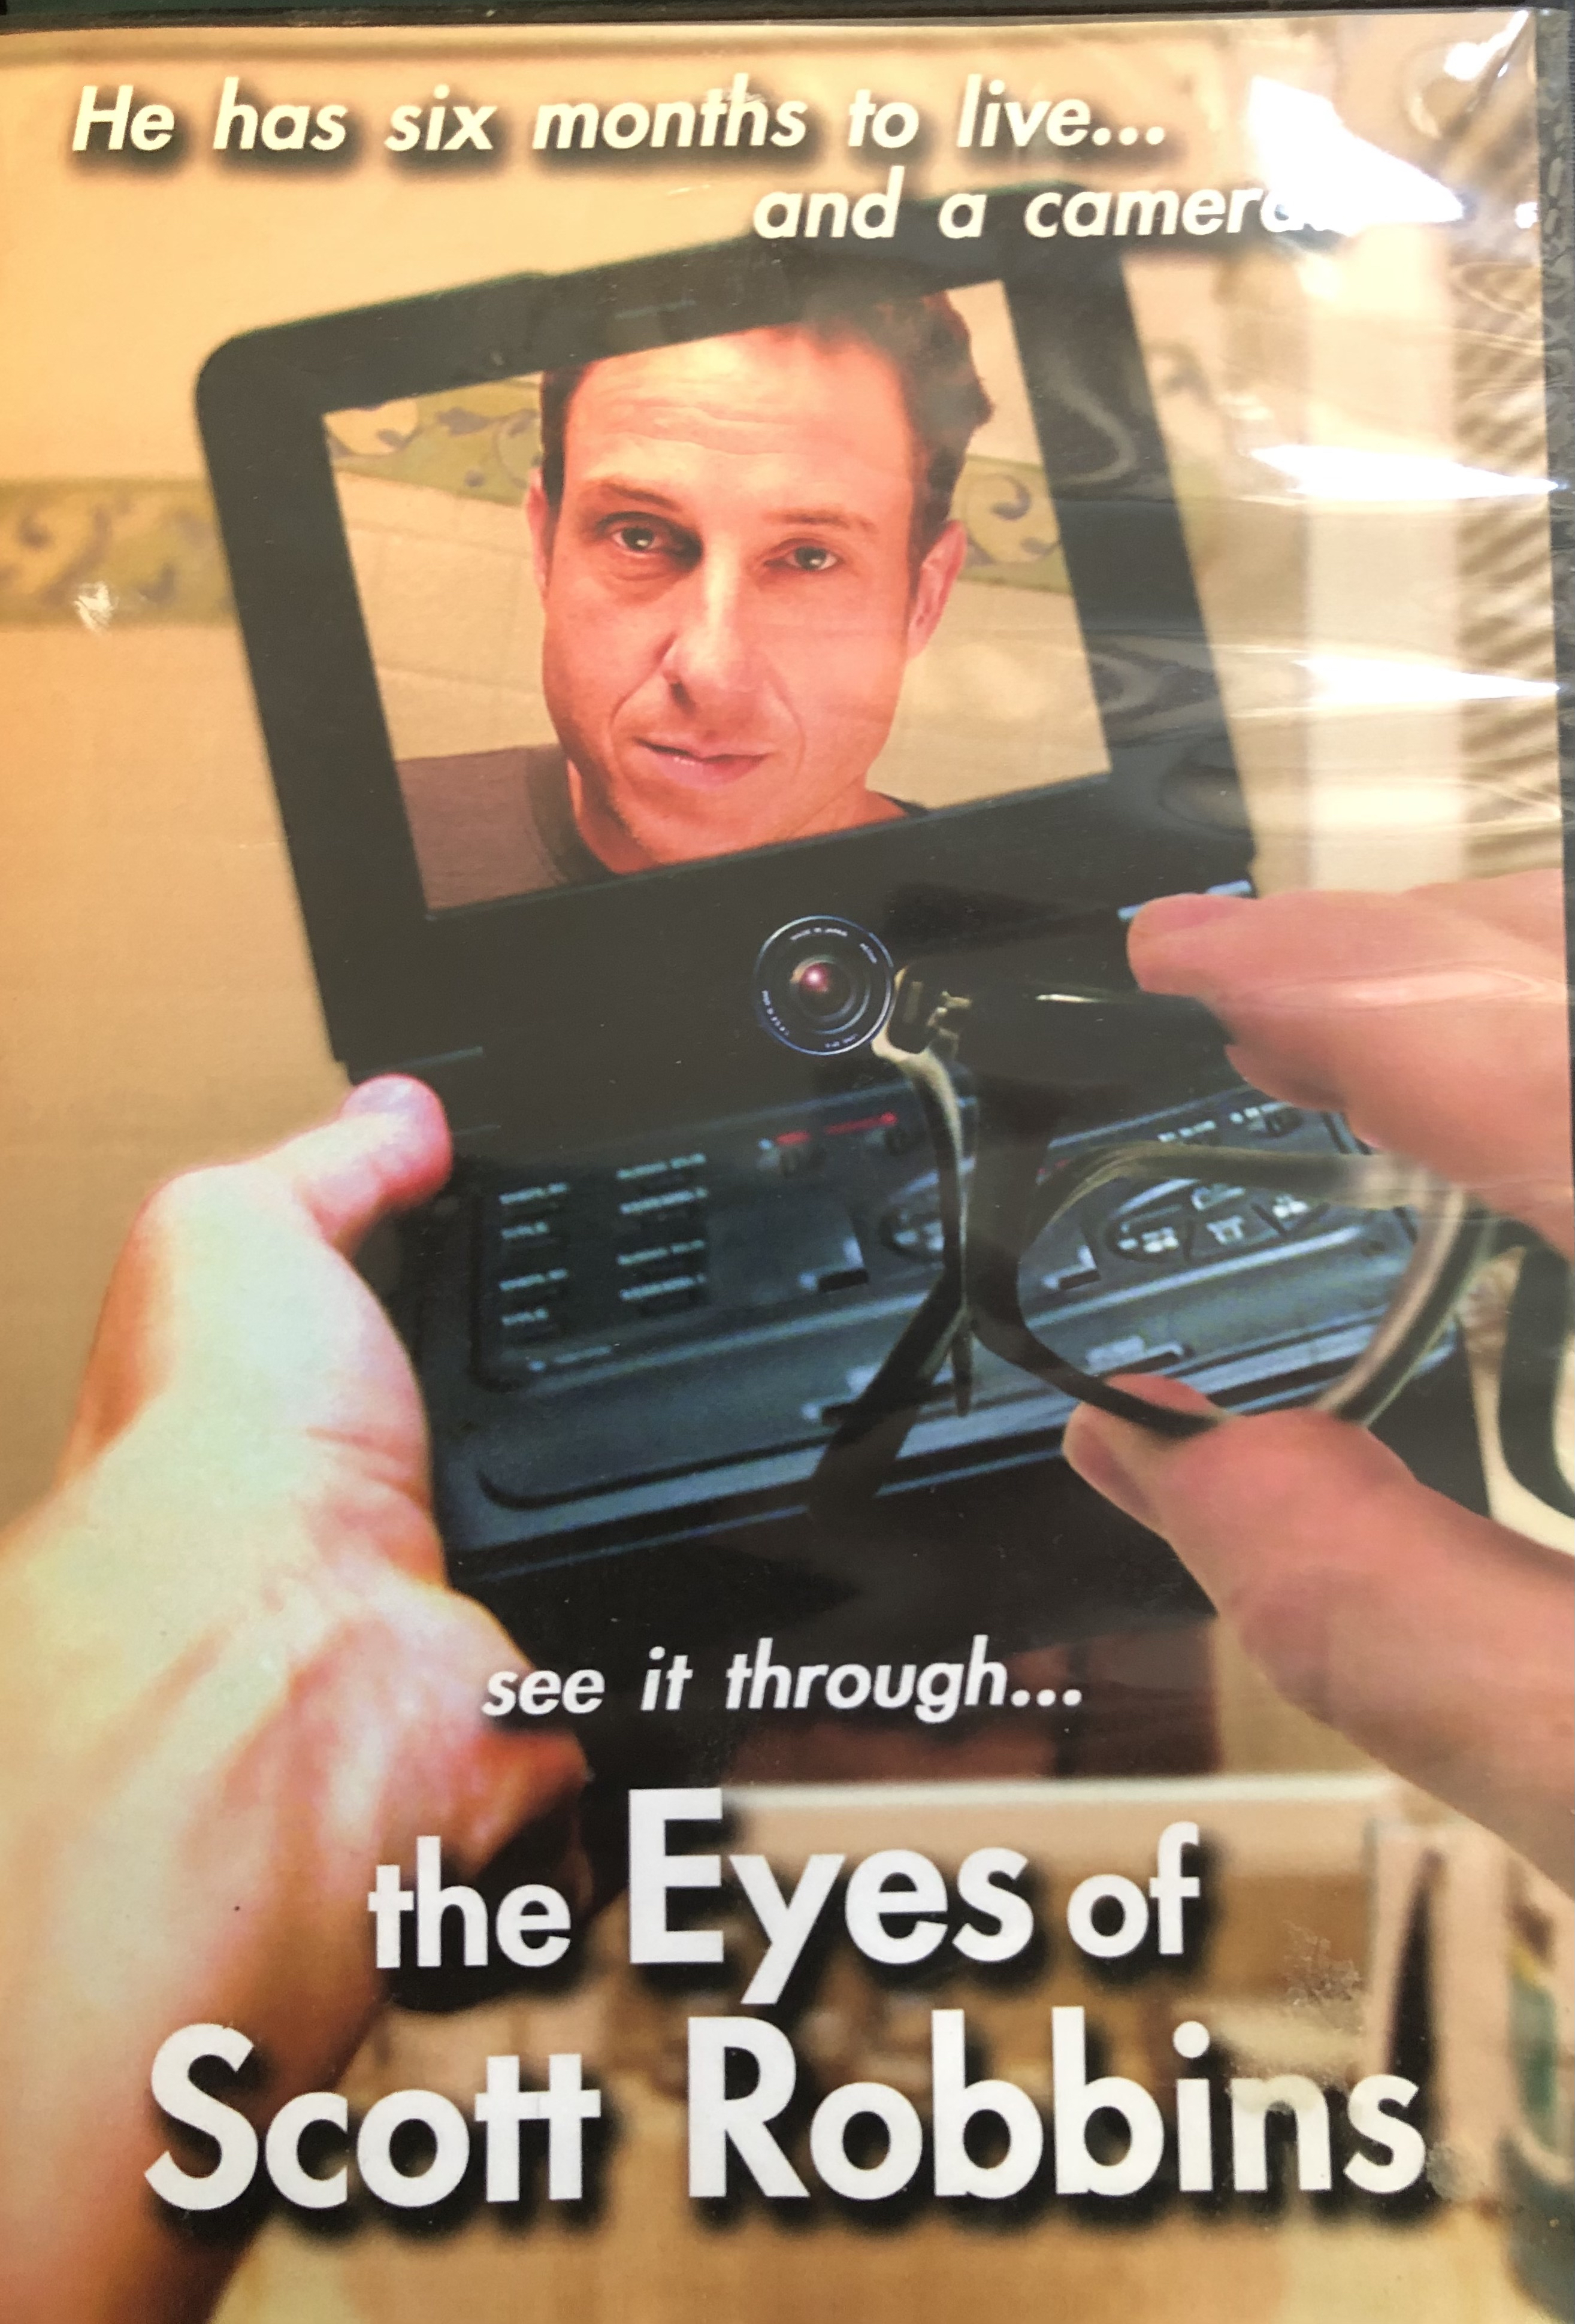 The Eyes of Scott Robbins